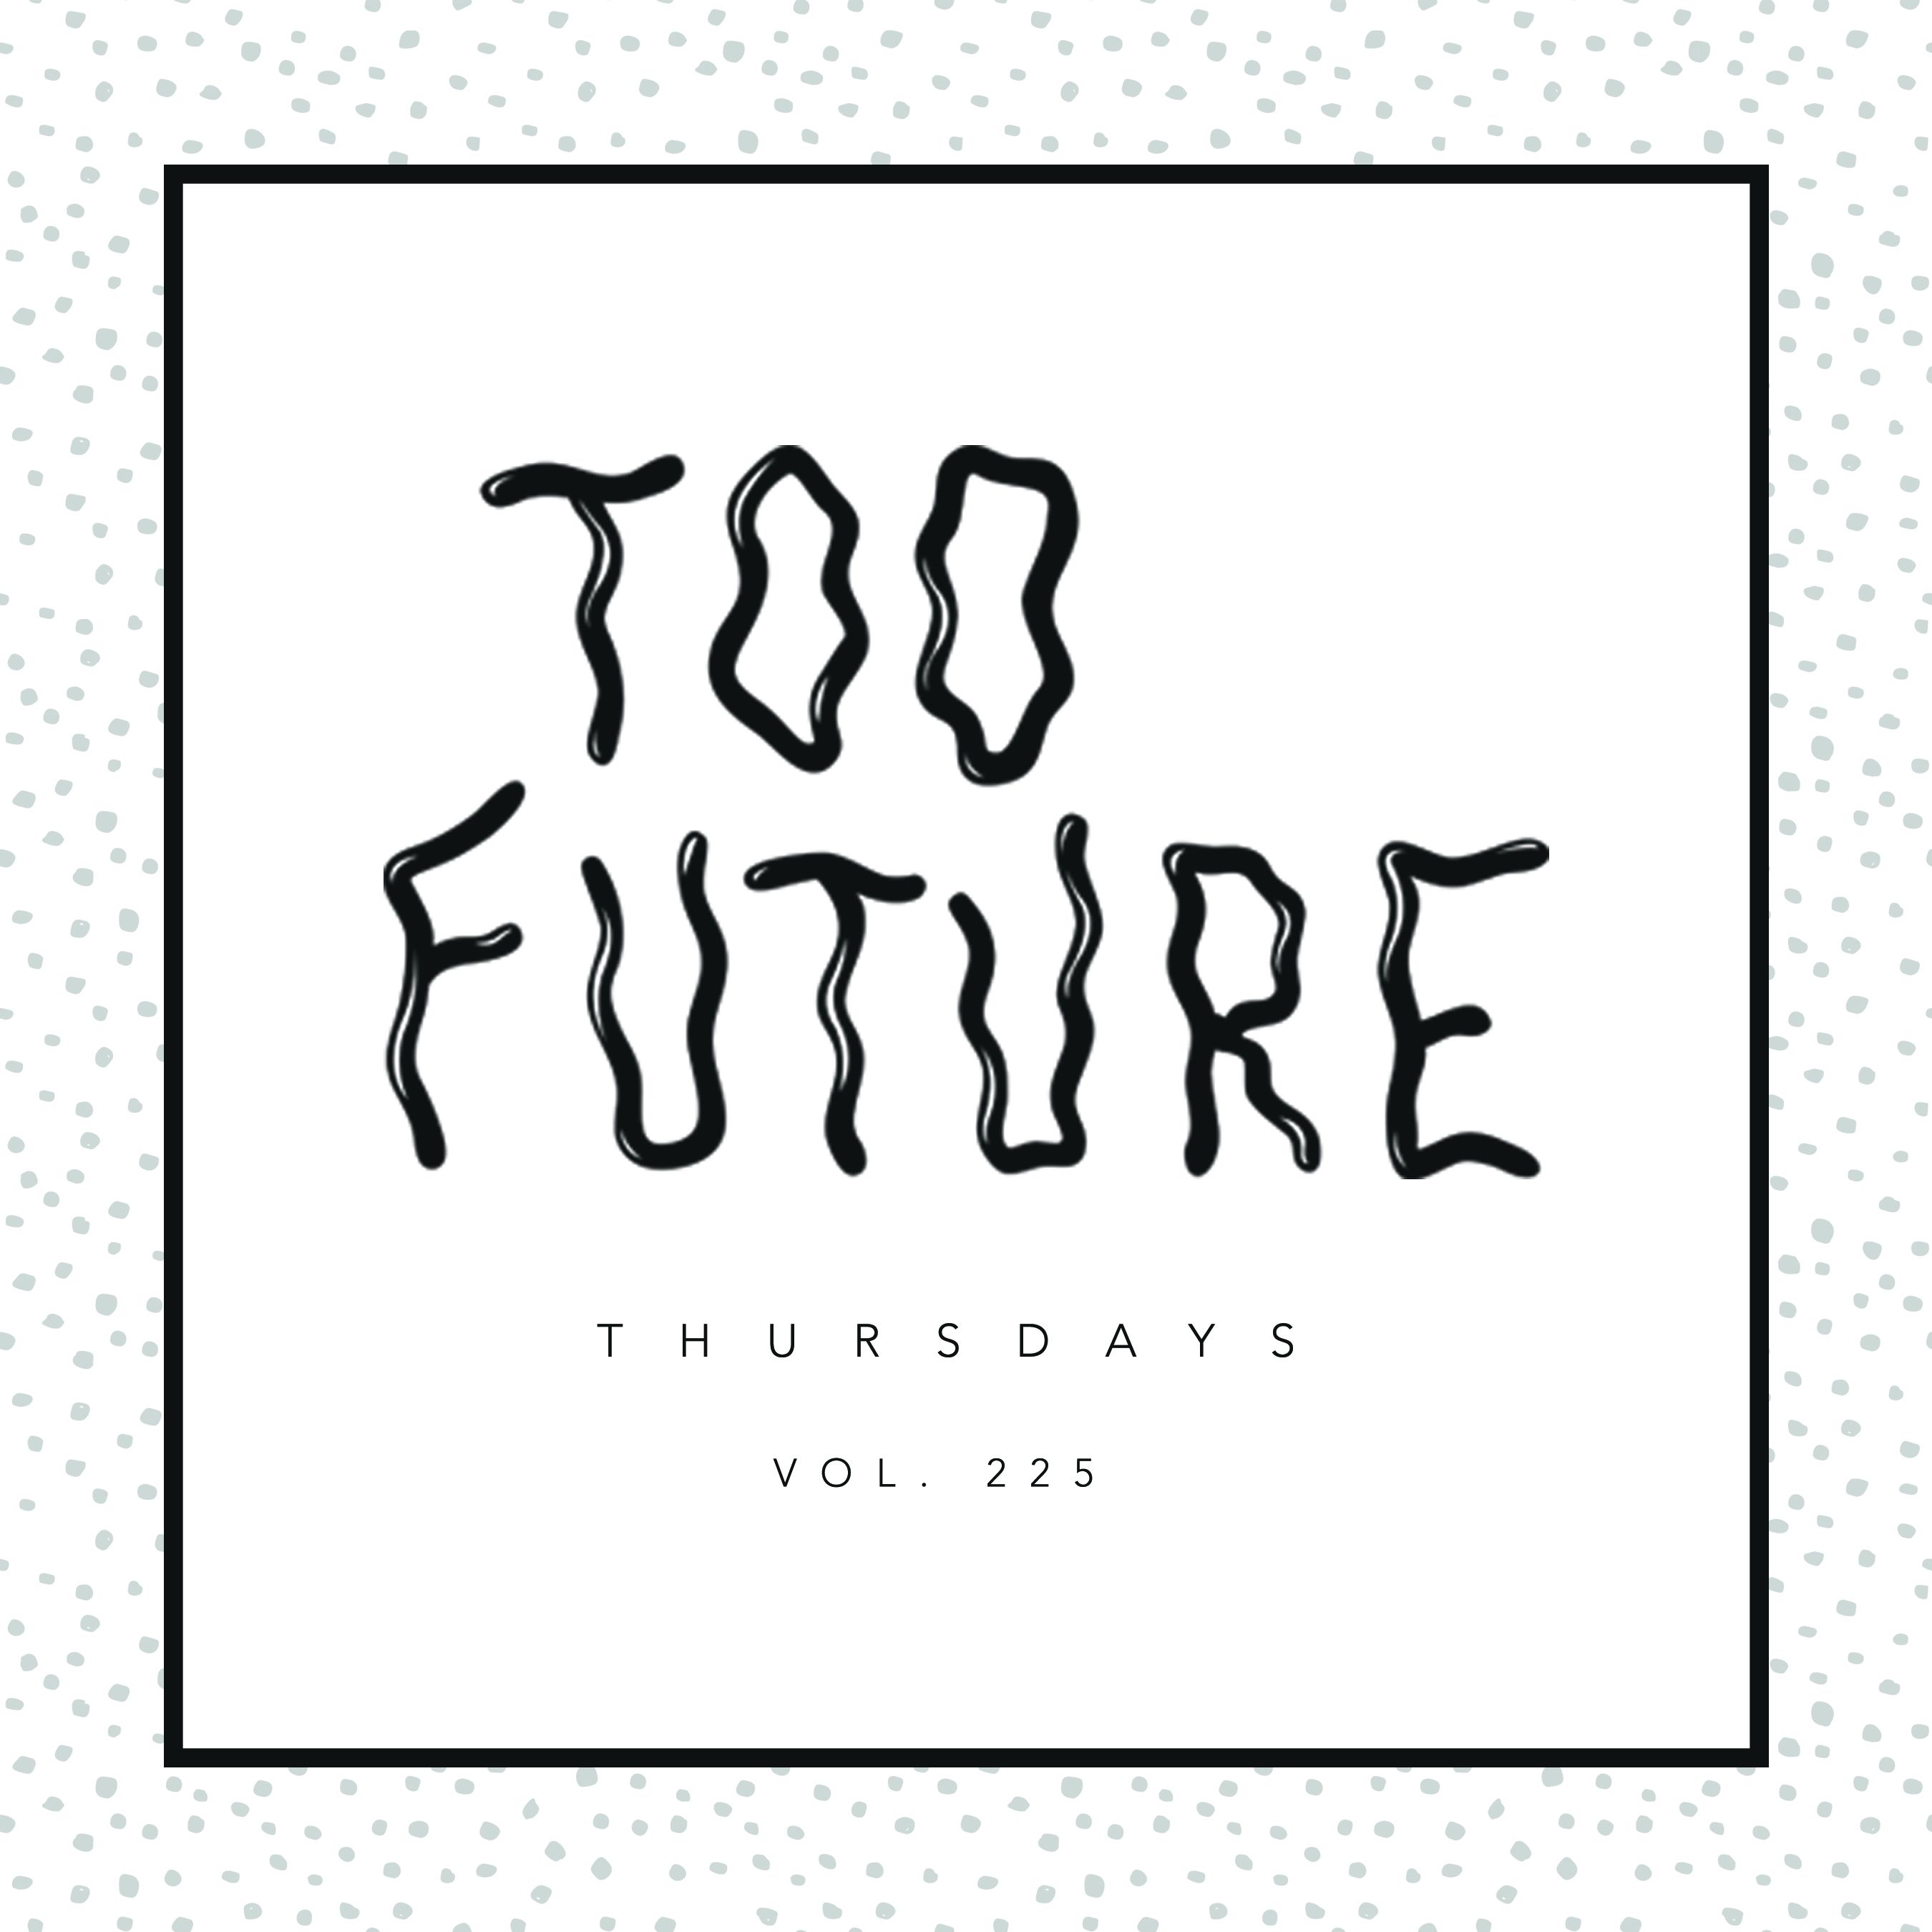 too-future-thursdays-vol-225